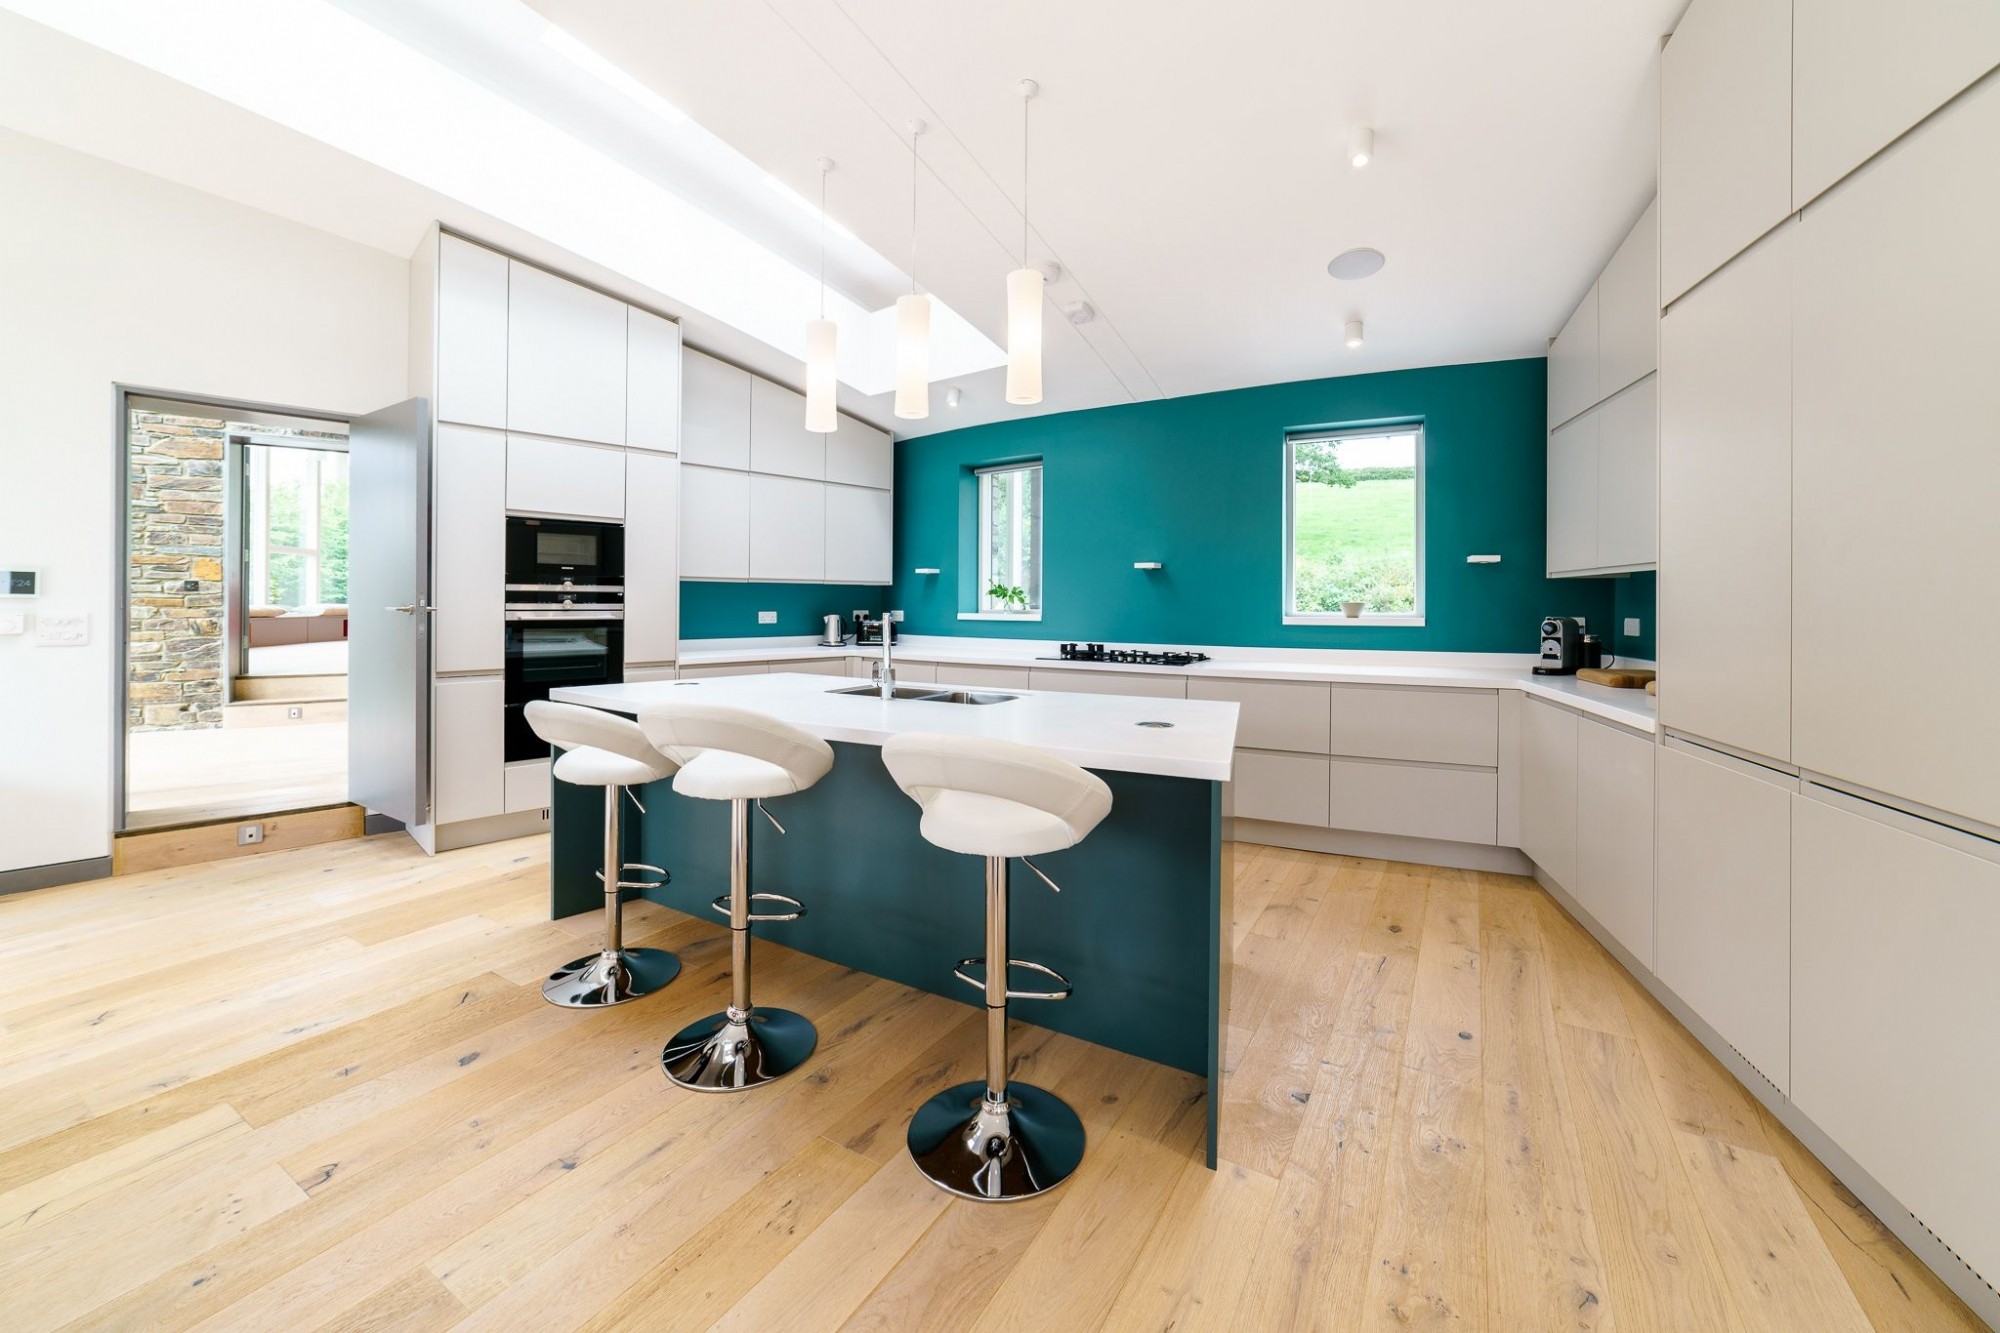 Property interior design for properties on Dartmoor